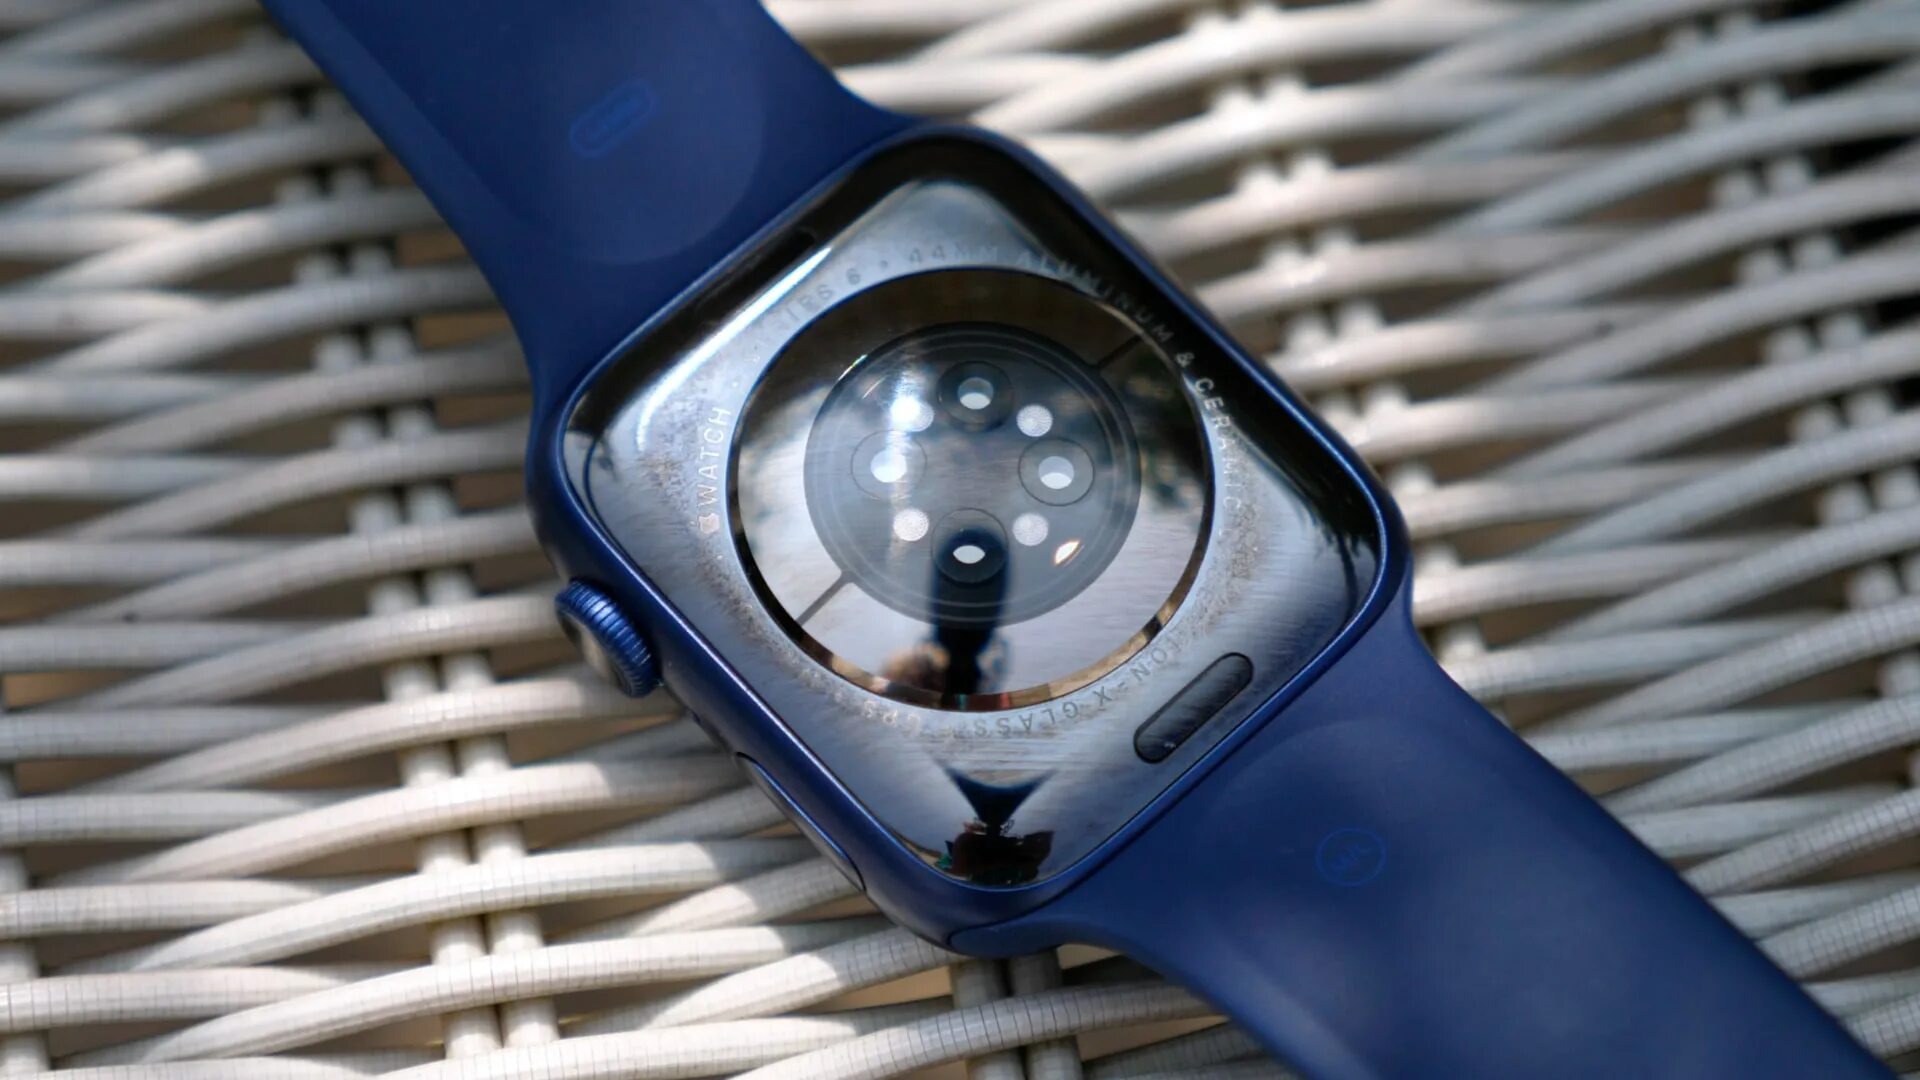 Apple watch 6. Apple watch Series 6 44mm. Apple watch Series 6 44mm Blue. Apple watch 6 44 mm. Watch series is